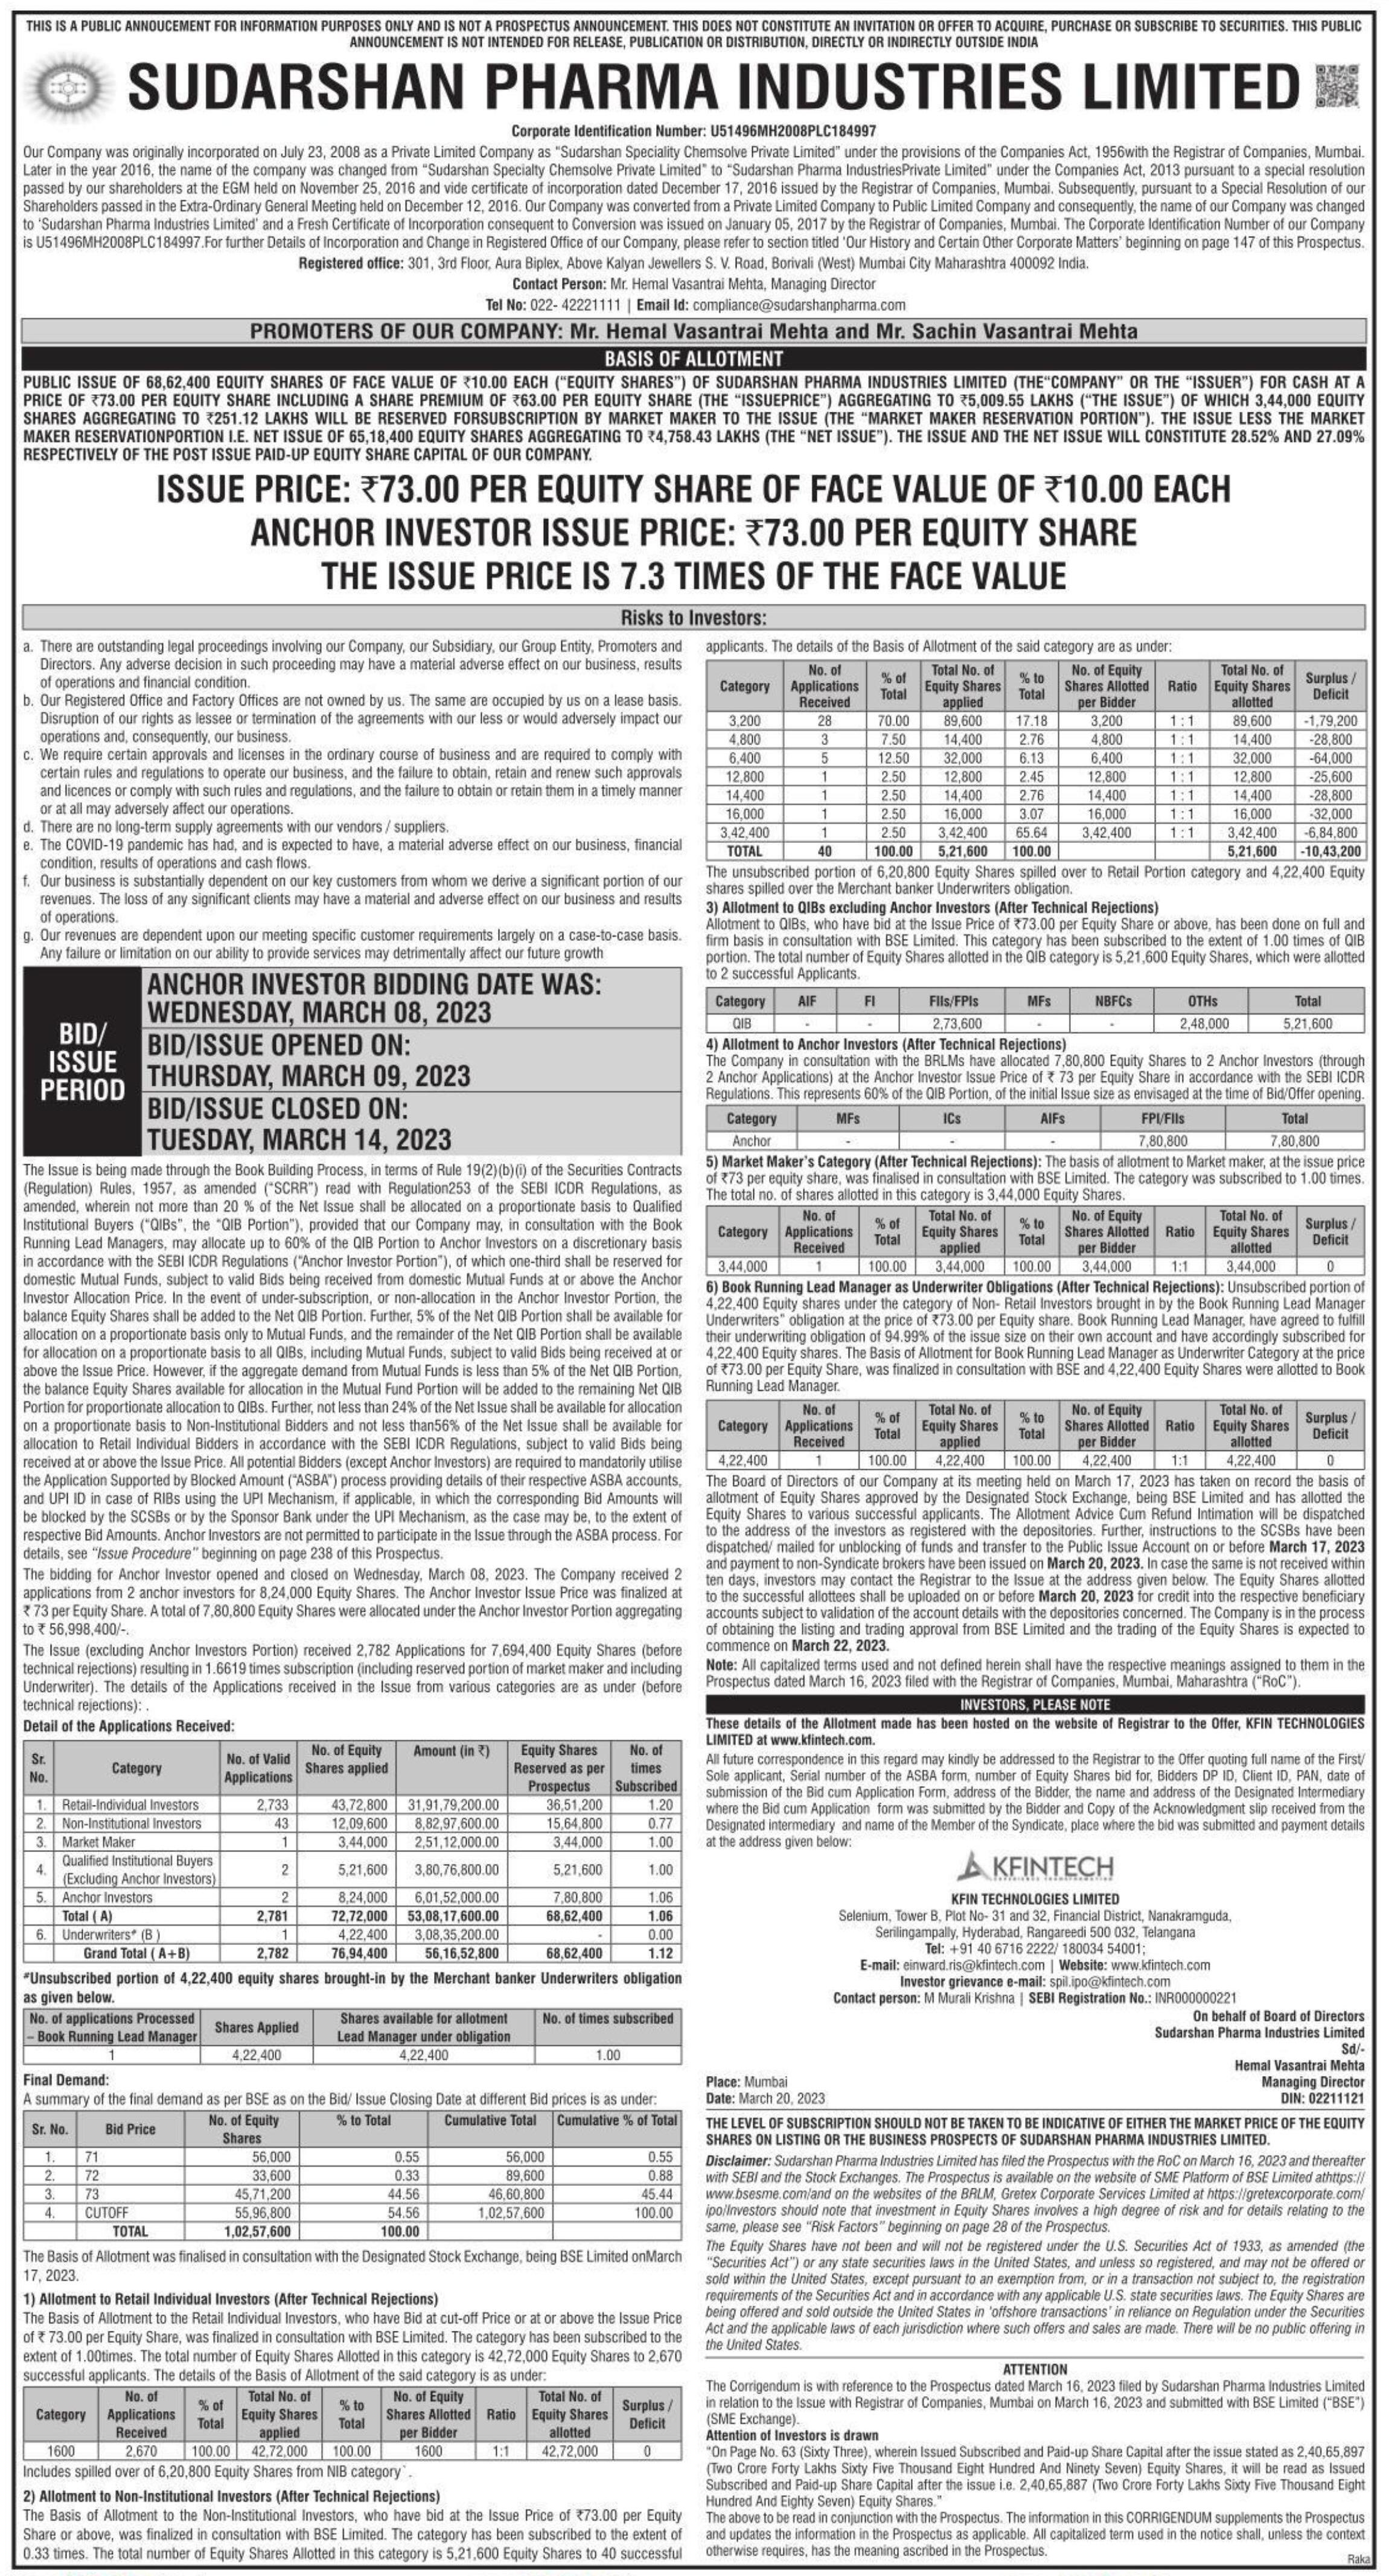 Sudarshan Pharma Industries Ltd IPO Basis of Allotment